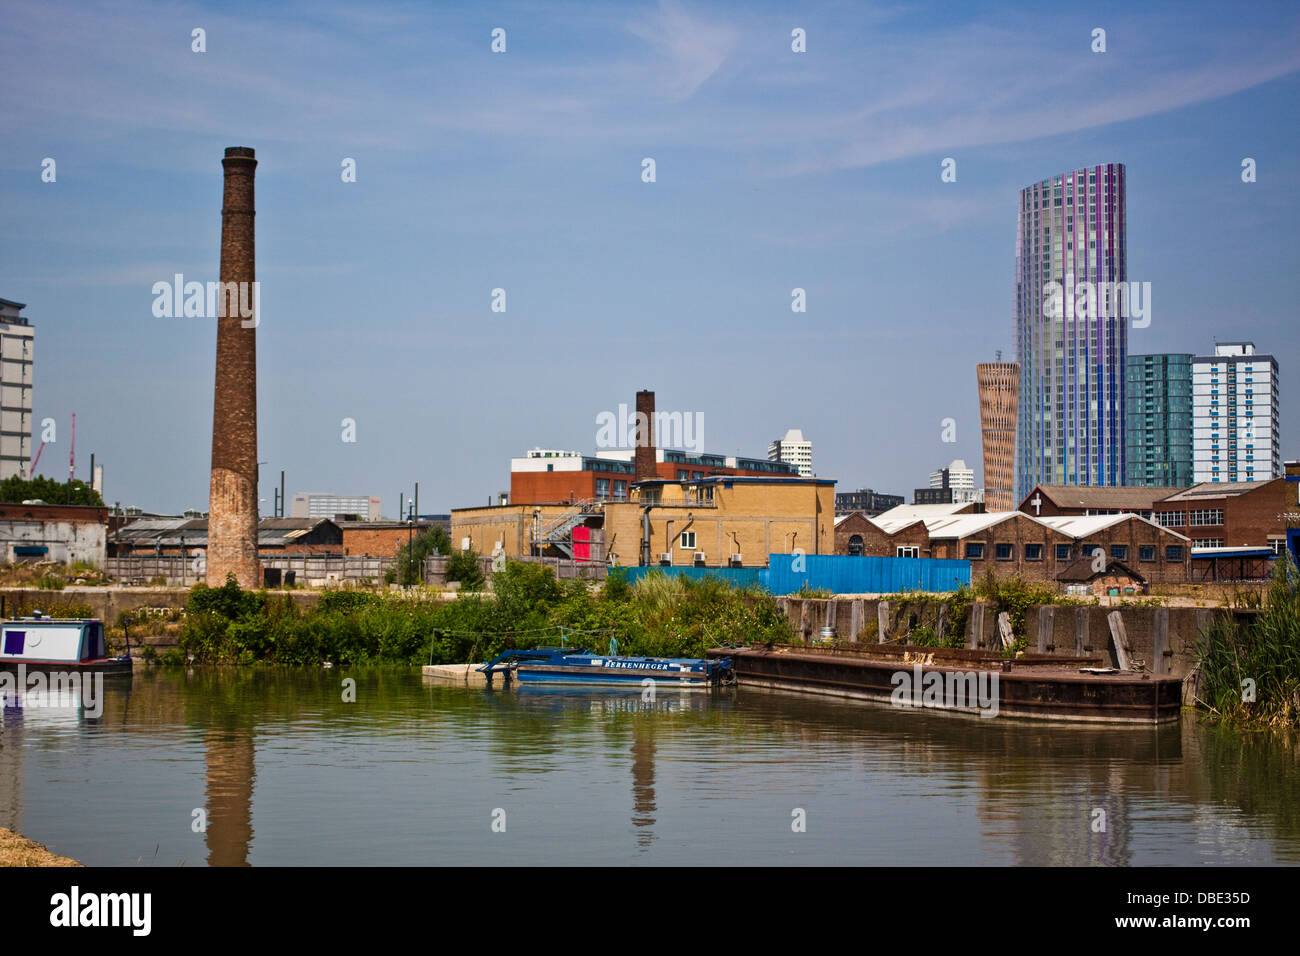 Devastazione industriale accanto al fiume Lea in Stratford, a est di Londra Foto Stock